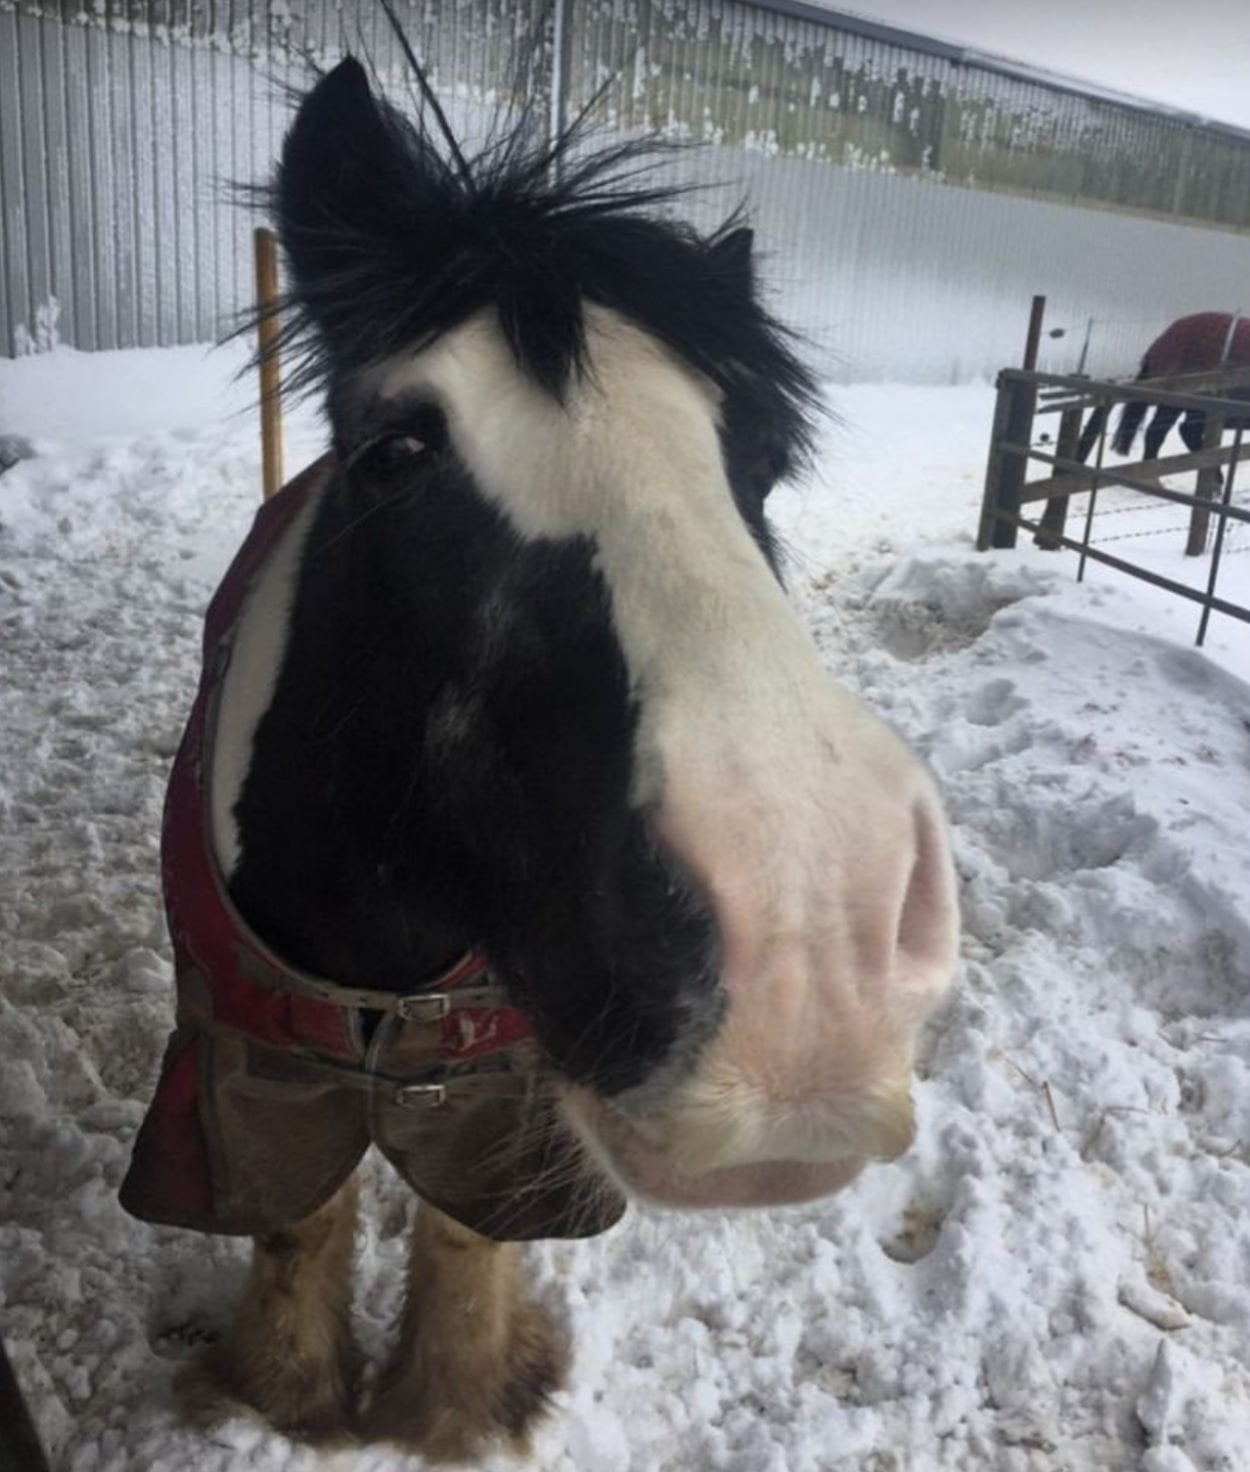 Horse outside in winter wearing a blanket